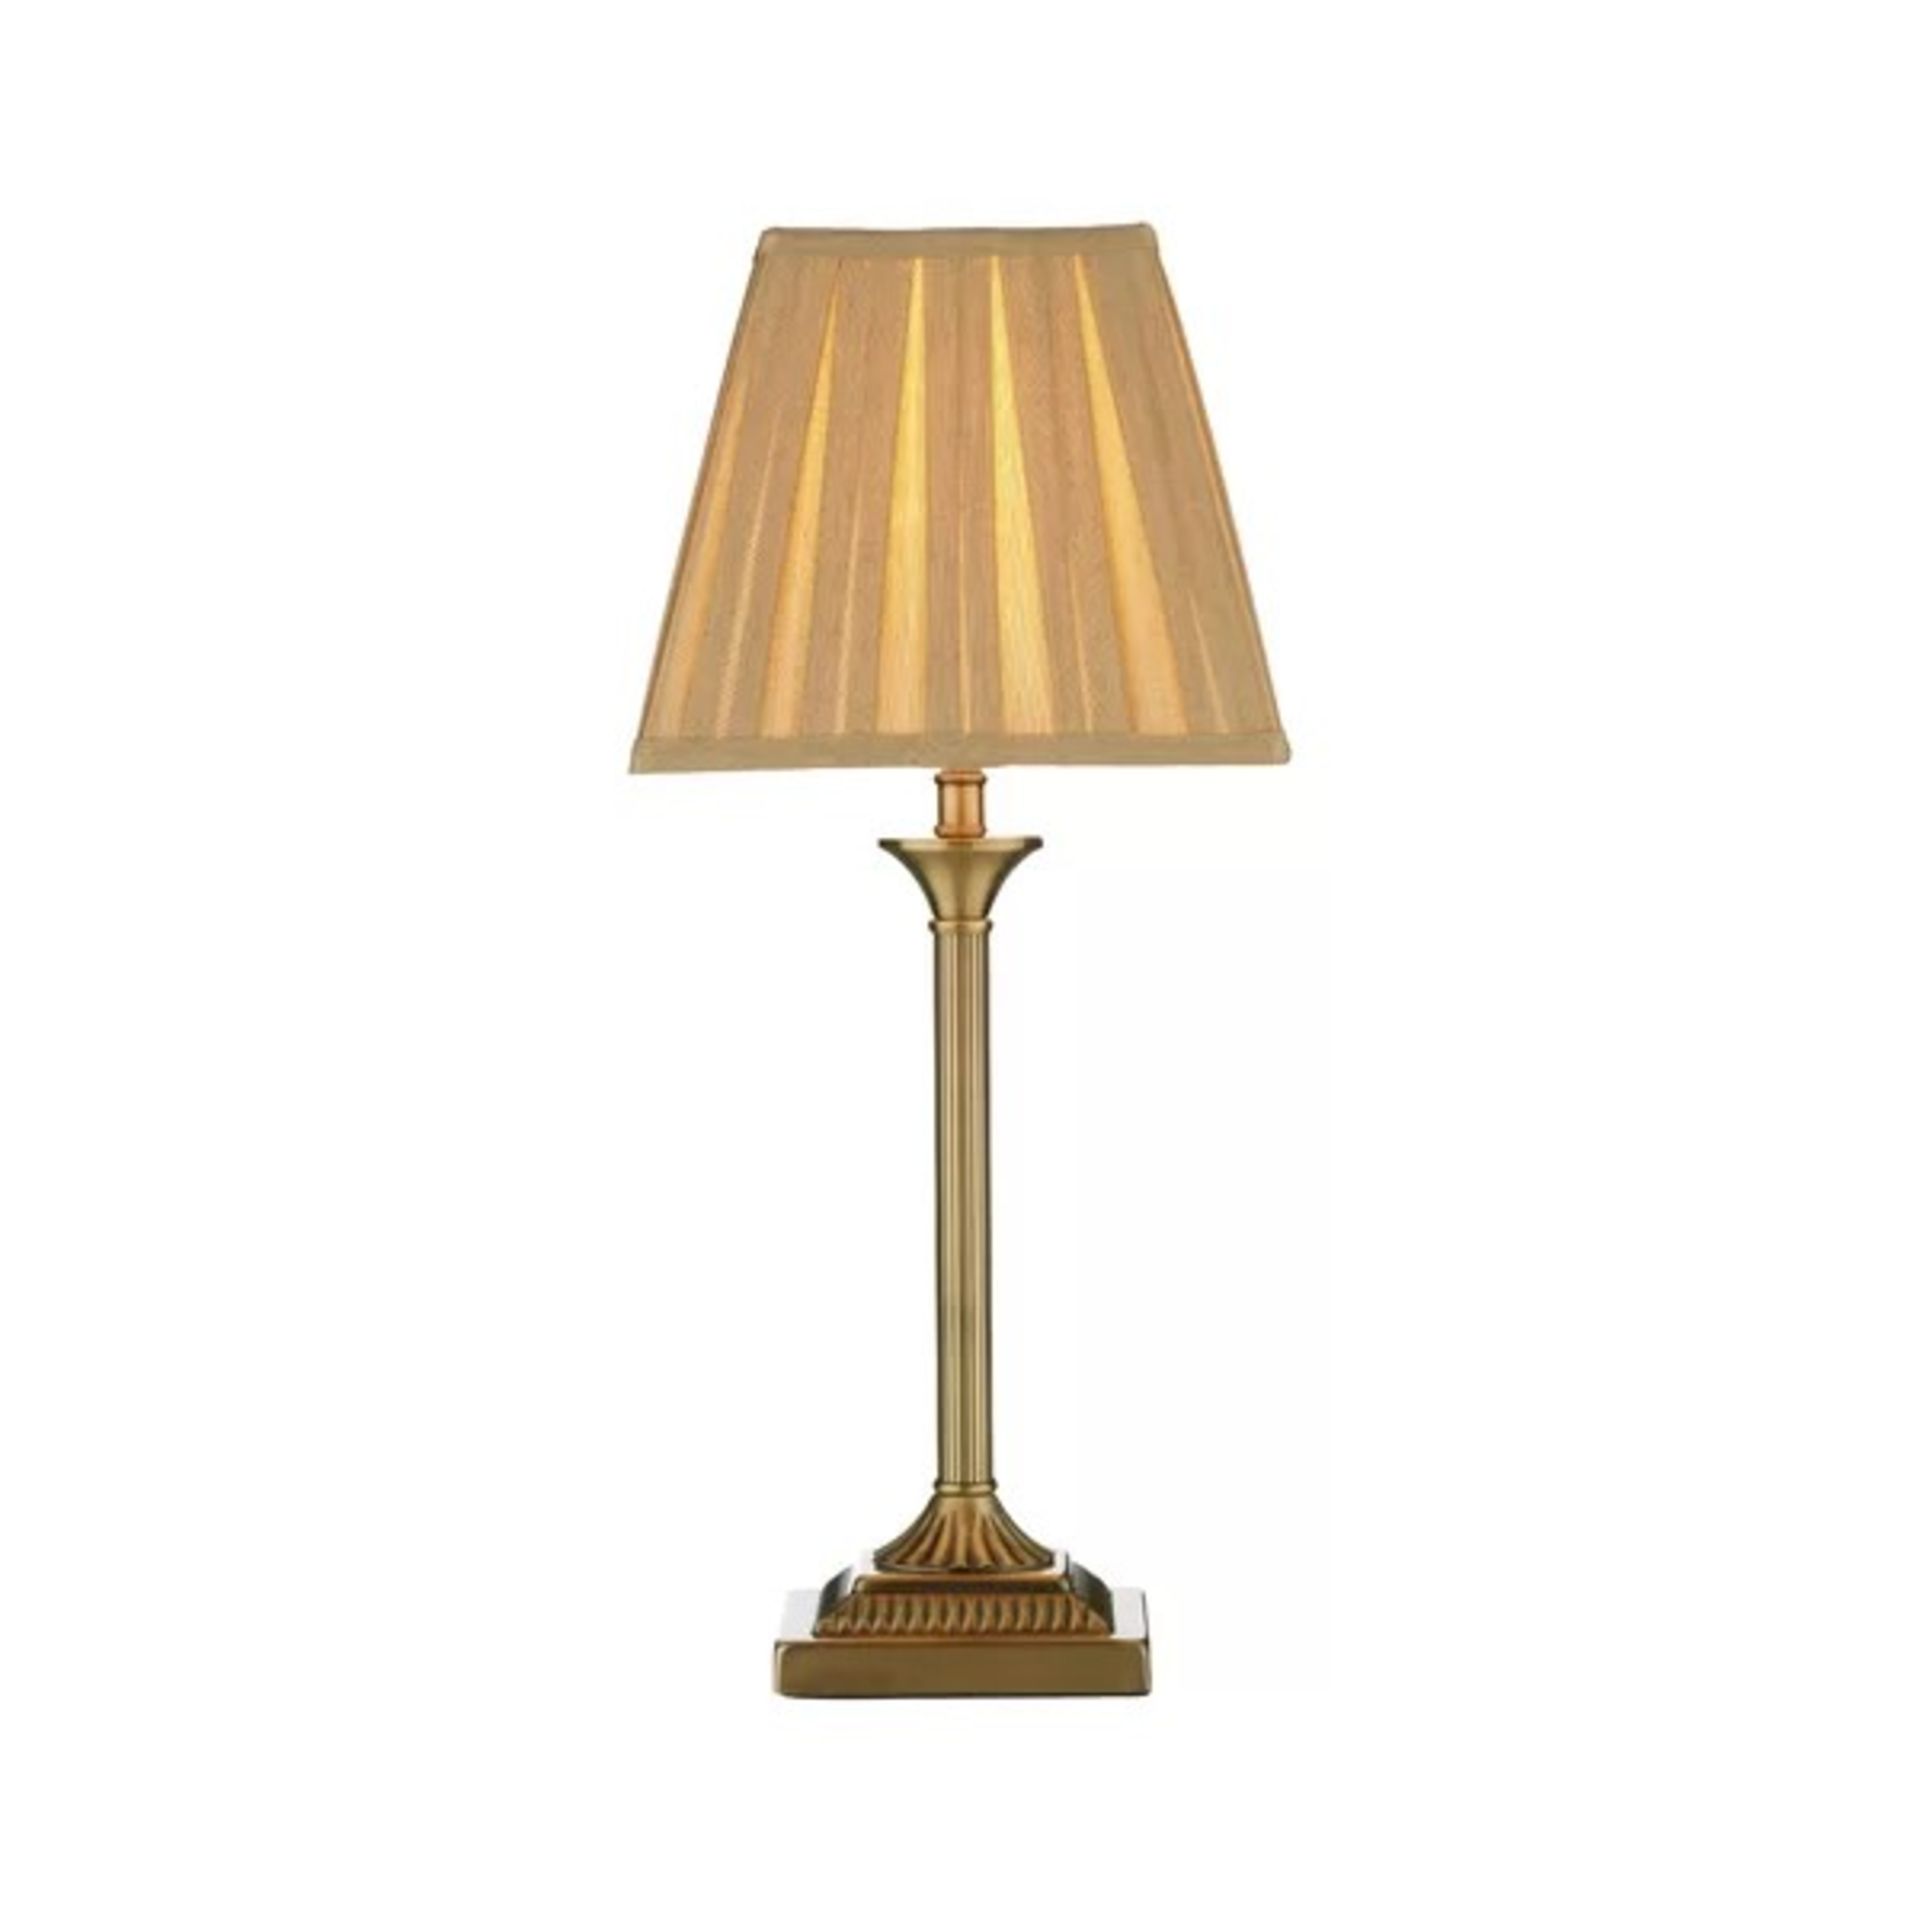 RRP £ 92.99 - Taylor 49cm Table Lamp - 49cm H x 22cm W x 22cm D